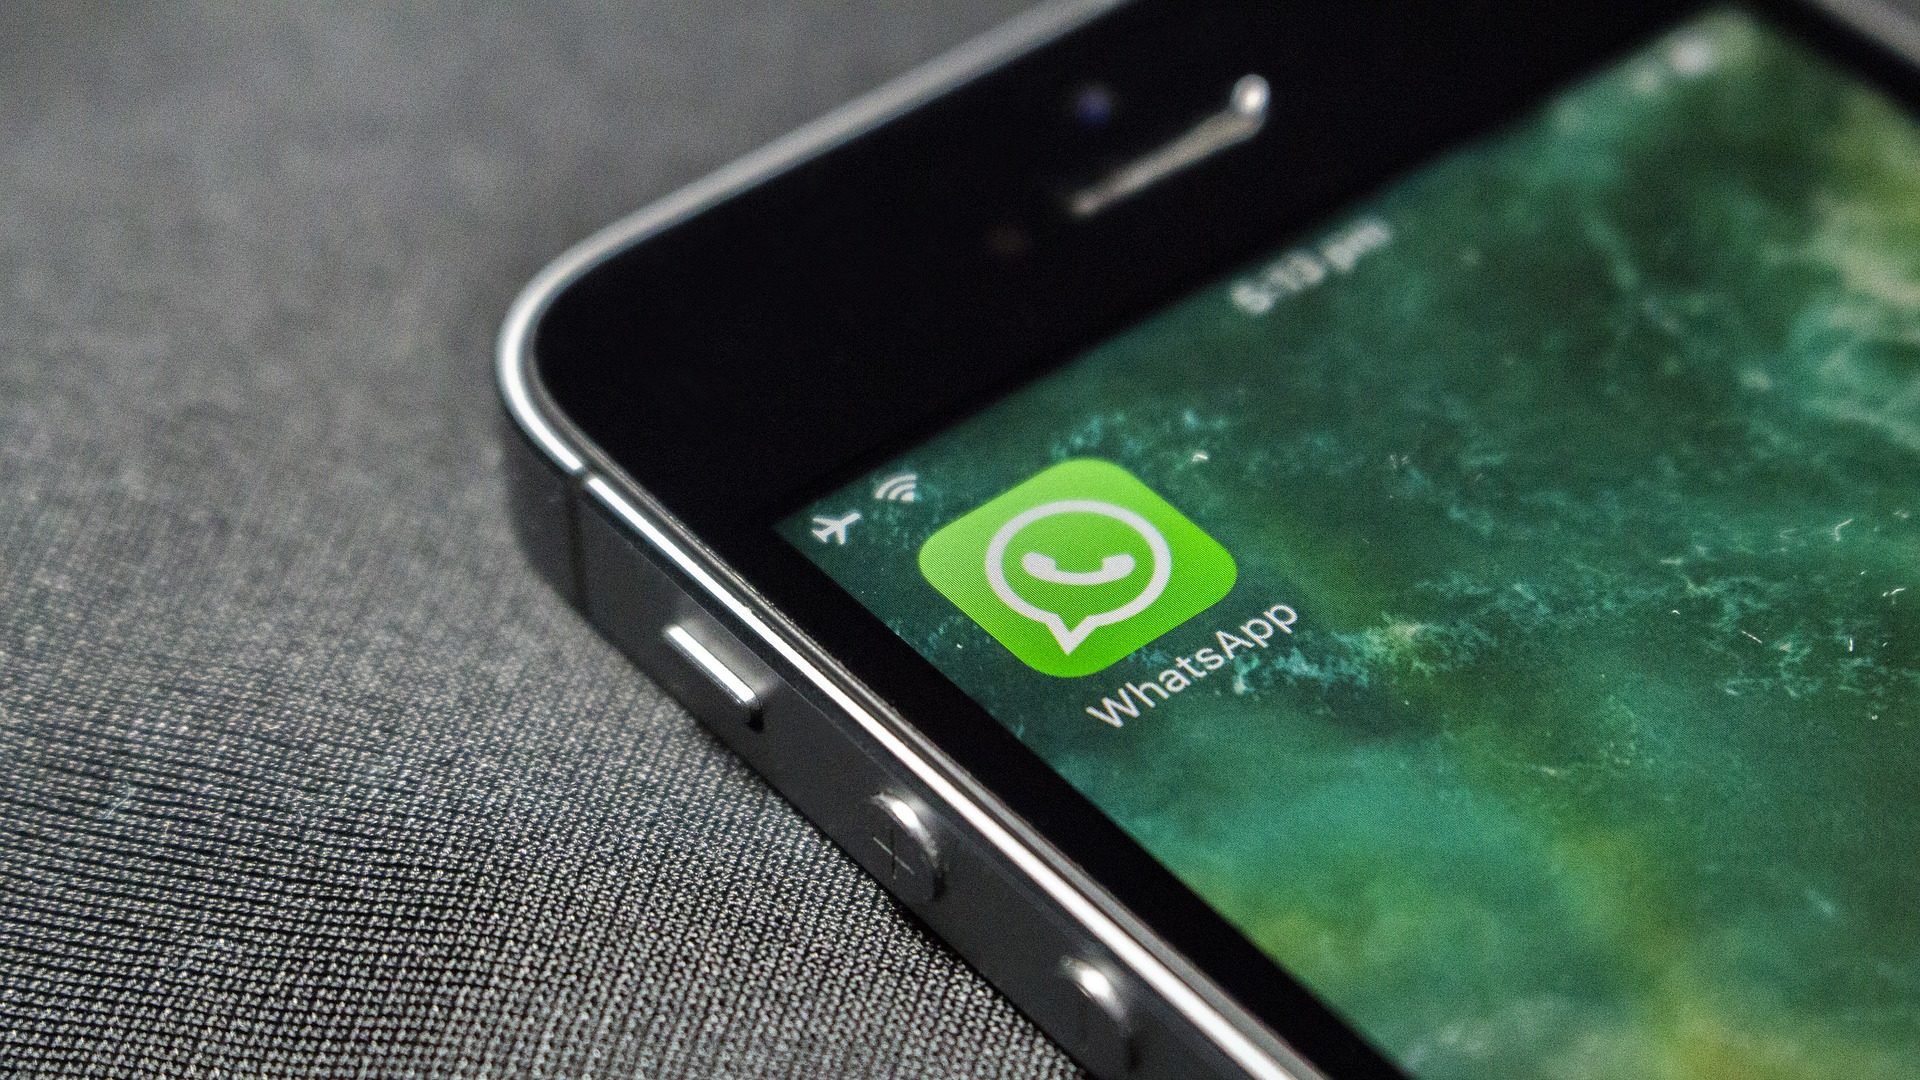 WhatsApp Beta permite enviar fotos no iPhone com mais qualidade | Aplicativos e Software